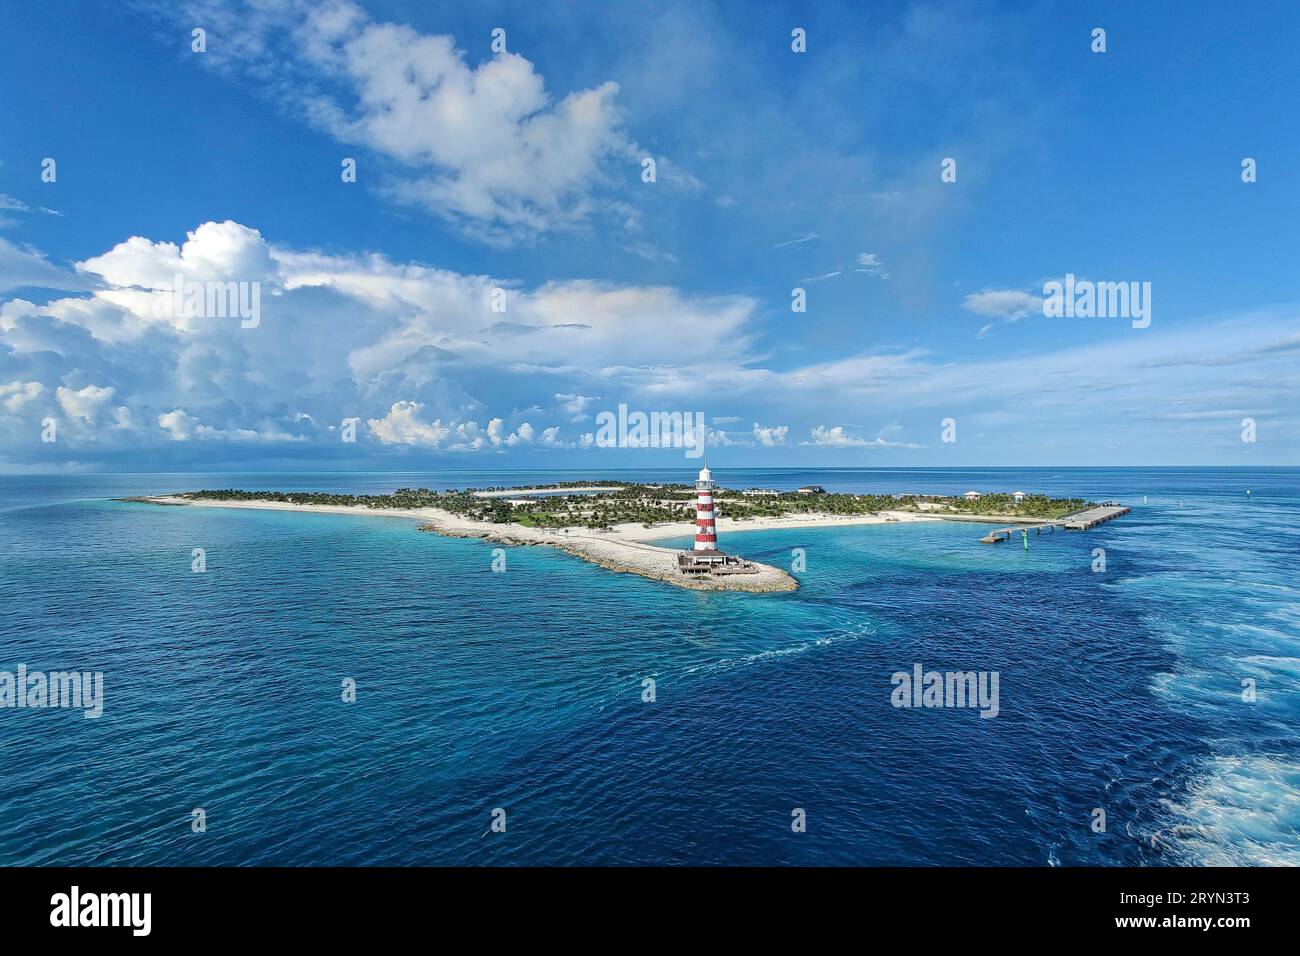 Vue de l'île privée de la compagnie de croisière MSC Cruises, Ocean Cay, Bahamas, depuis le bateau de croisière Banque D'Images